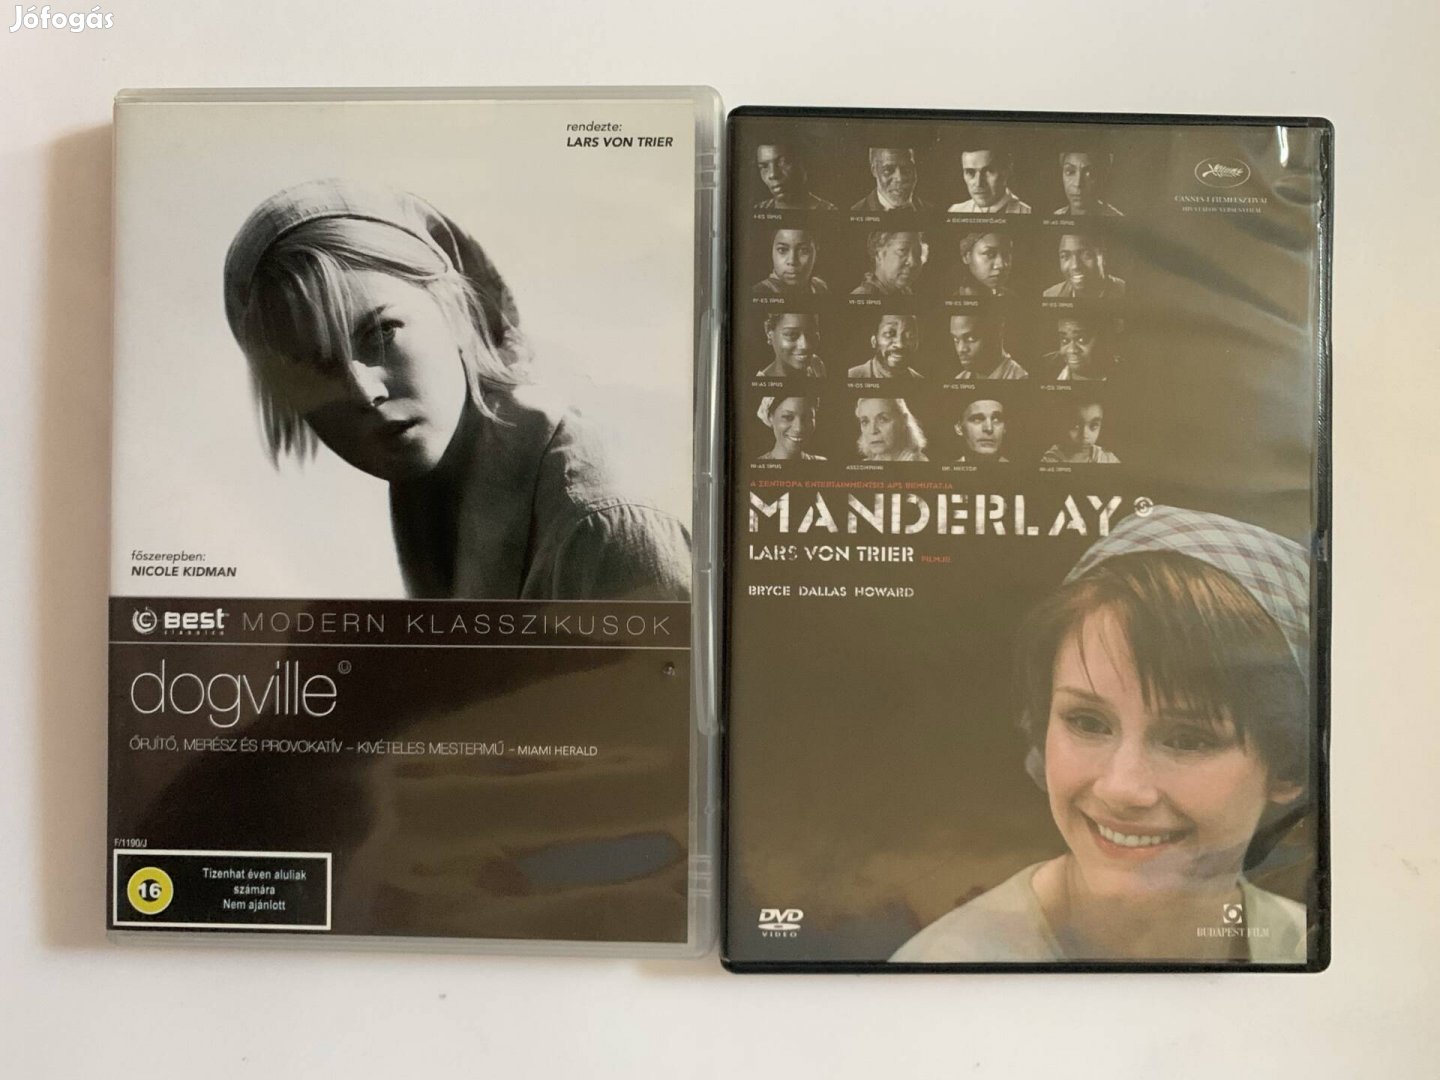 Dogville és a Manderlay dvd